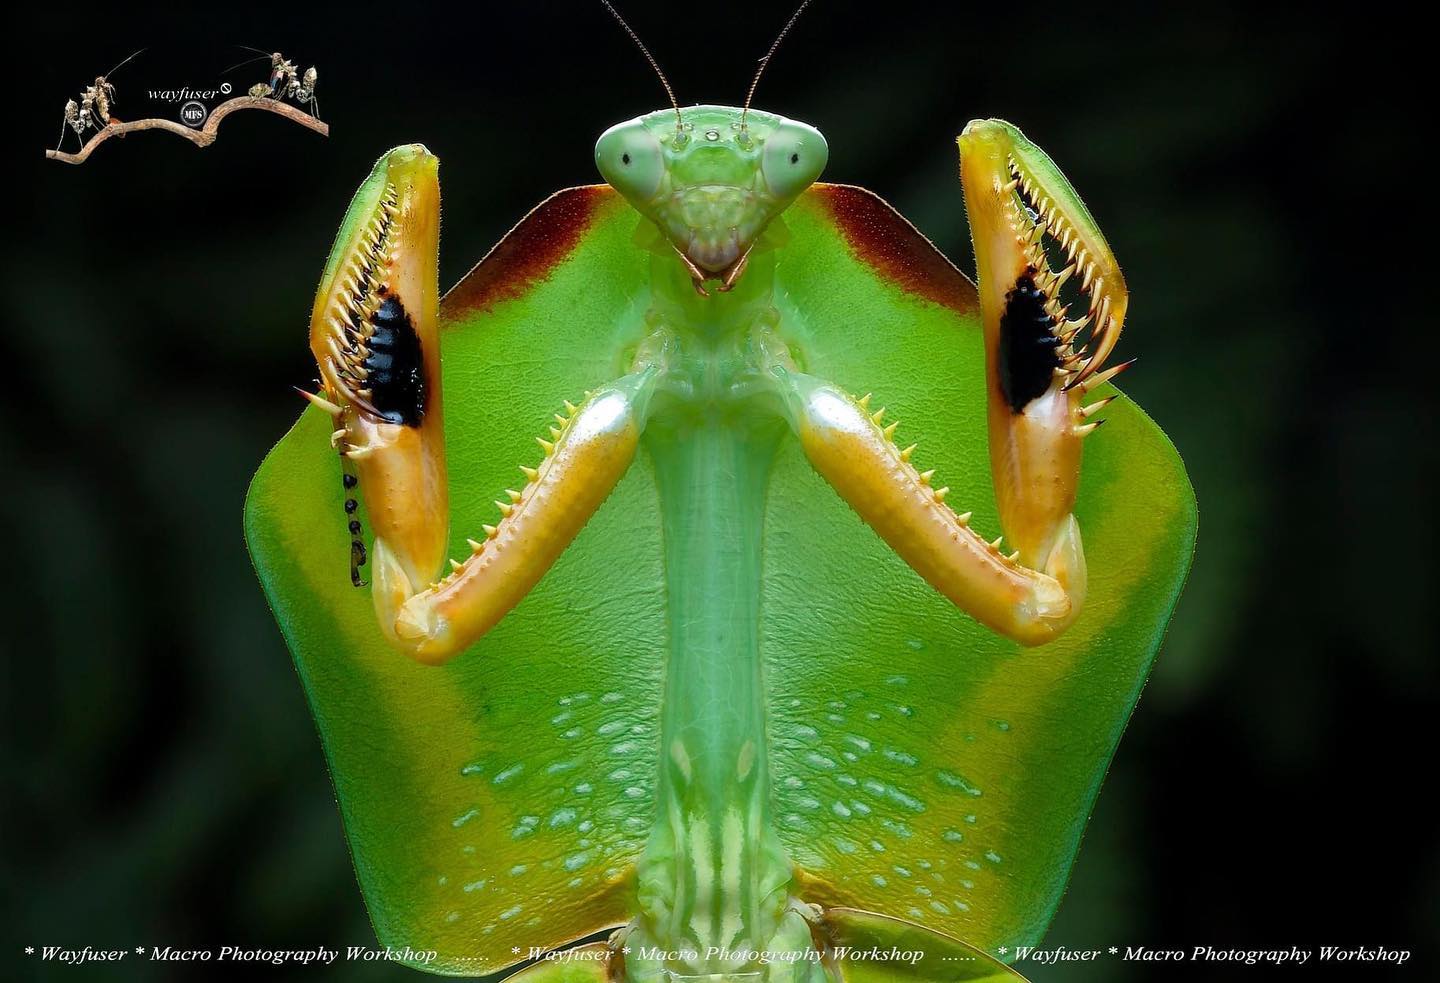 Dancing mantis taken by photographer Pang Way